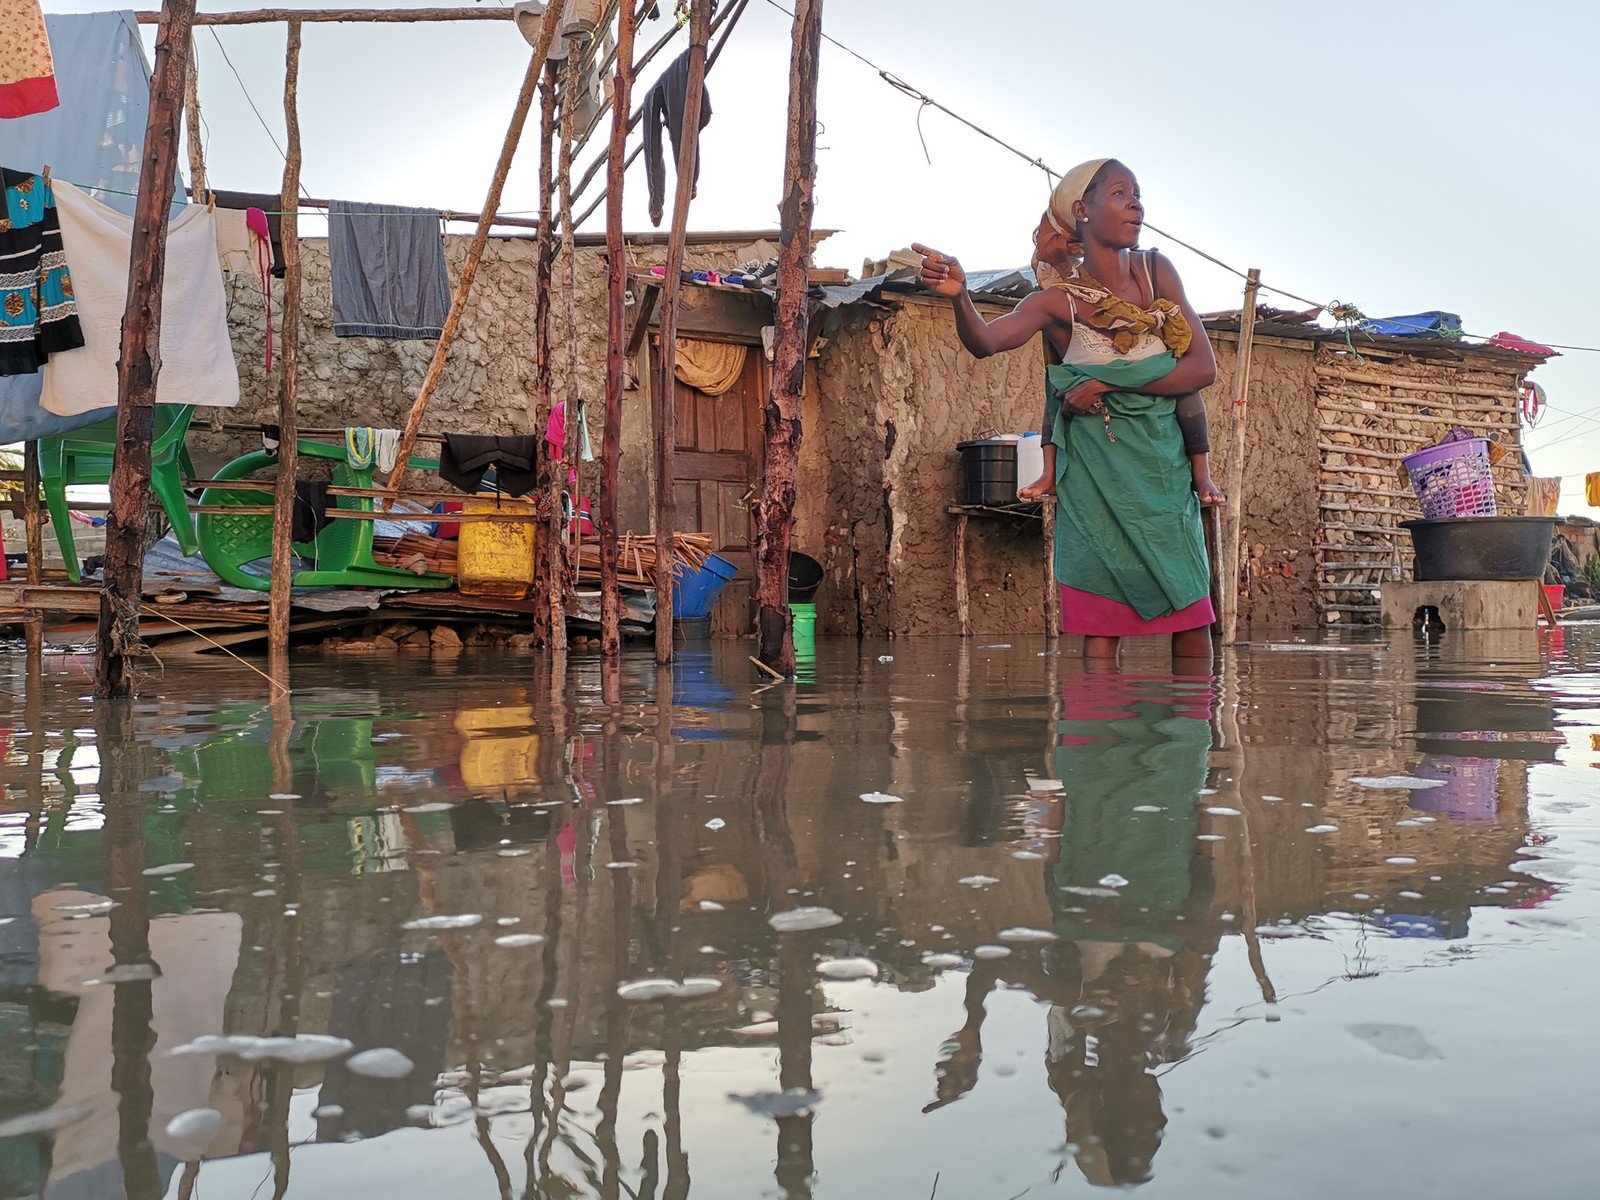 2019年3月，强烈热带气旋「伊代」（Idai）横扫非洲南部三国，在莫桑比克、马拉维和津巴布韦，造成过千人死亡，近300万人受灾。当中，受灾最严重的莫桑比克，更在短短六周内两次遭风暴吹袭，造成的经济损失高达32亿美元，相等于该国全年22%的国内生产总值，以及政府全年近五成的公共财政开支。（照片：Sergio Zimba / Oxfam）